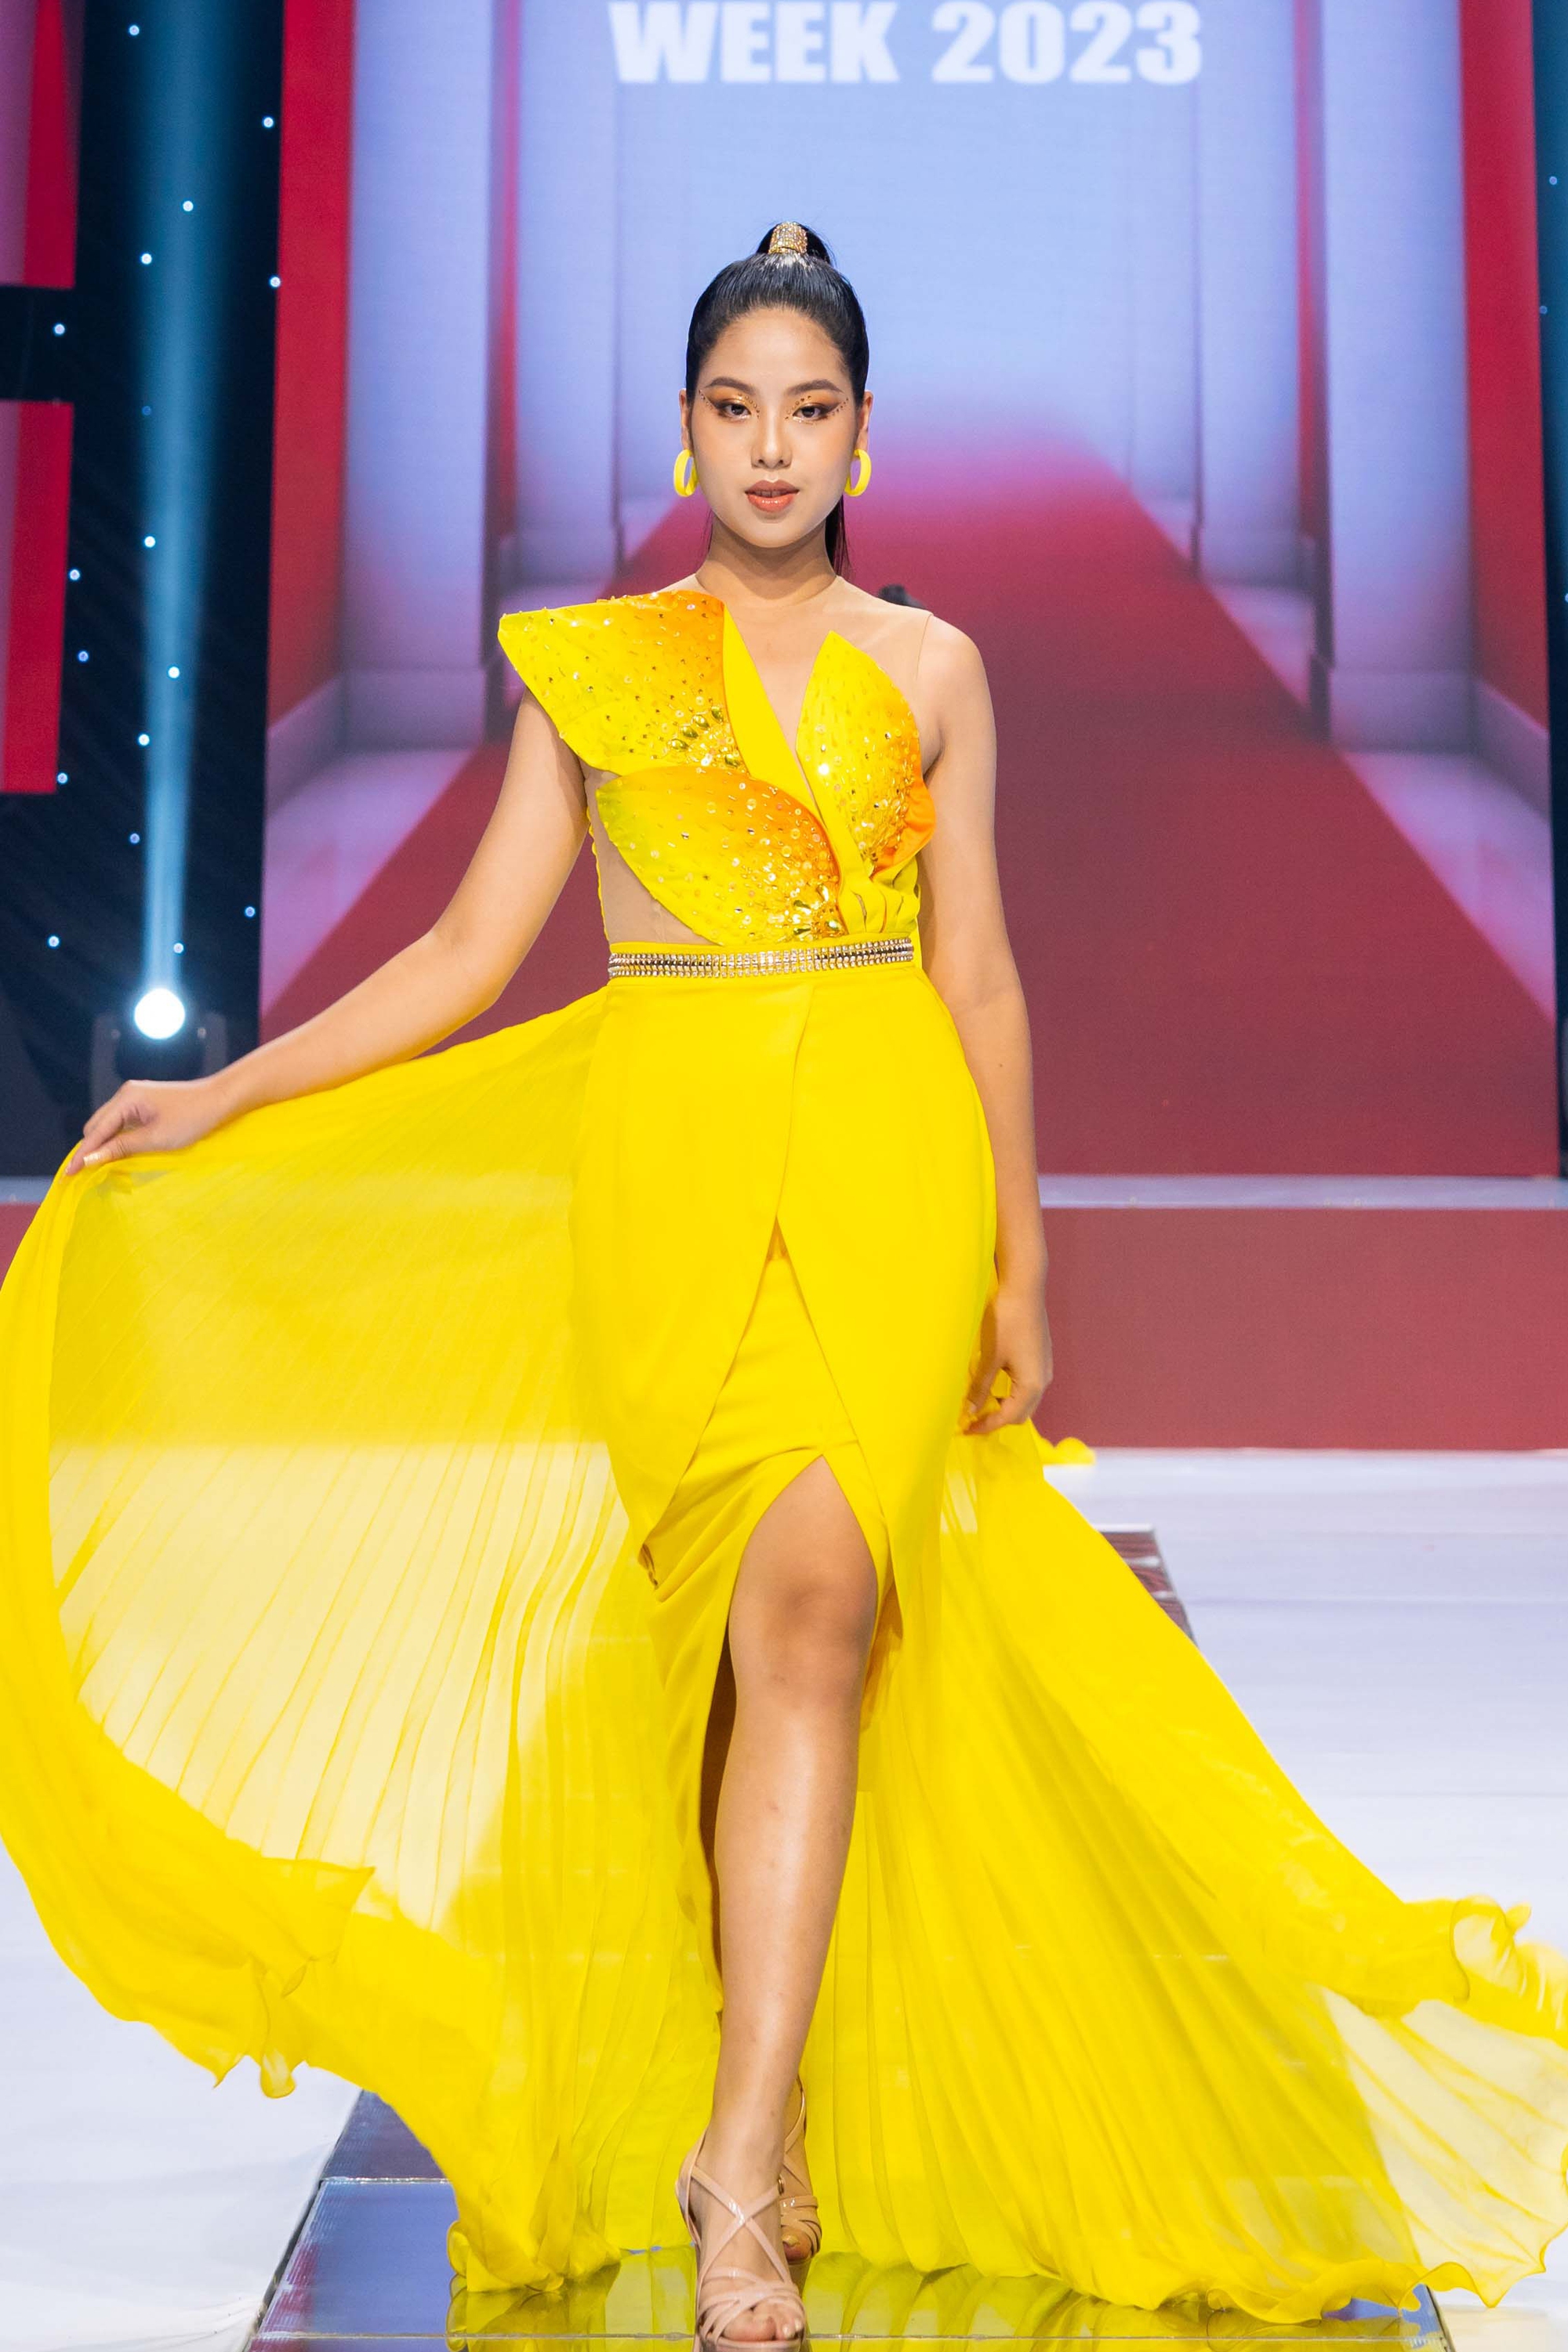 Hoa hậu Bảo Ngọc catwalk với trang phục nặng 30kg - Ảnh 9.